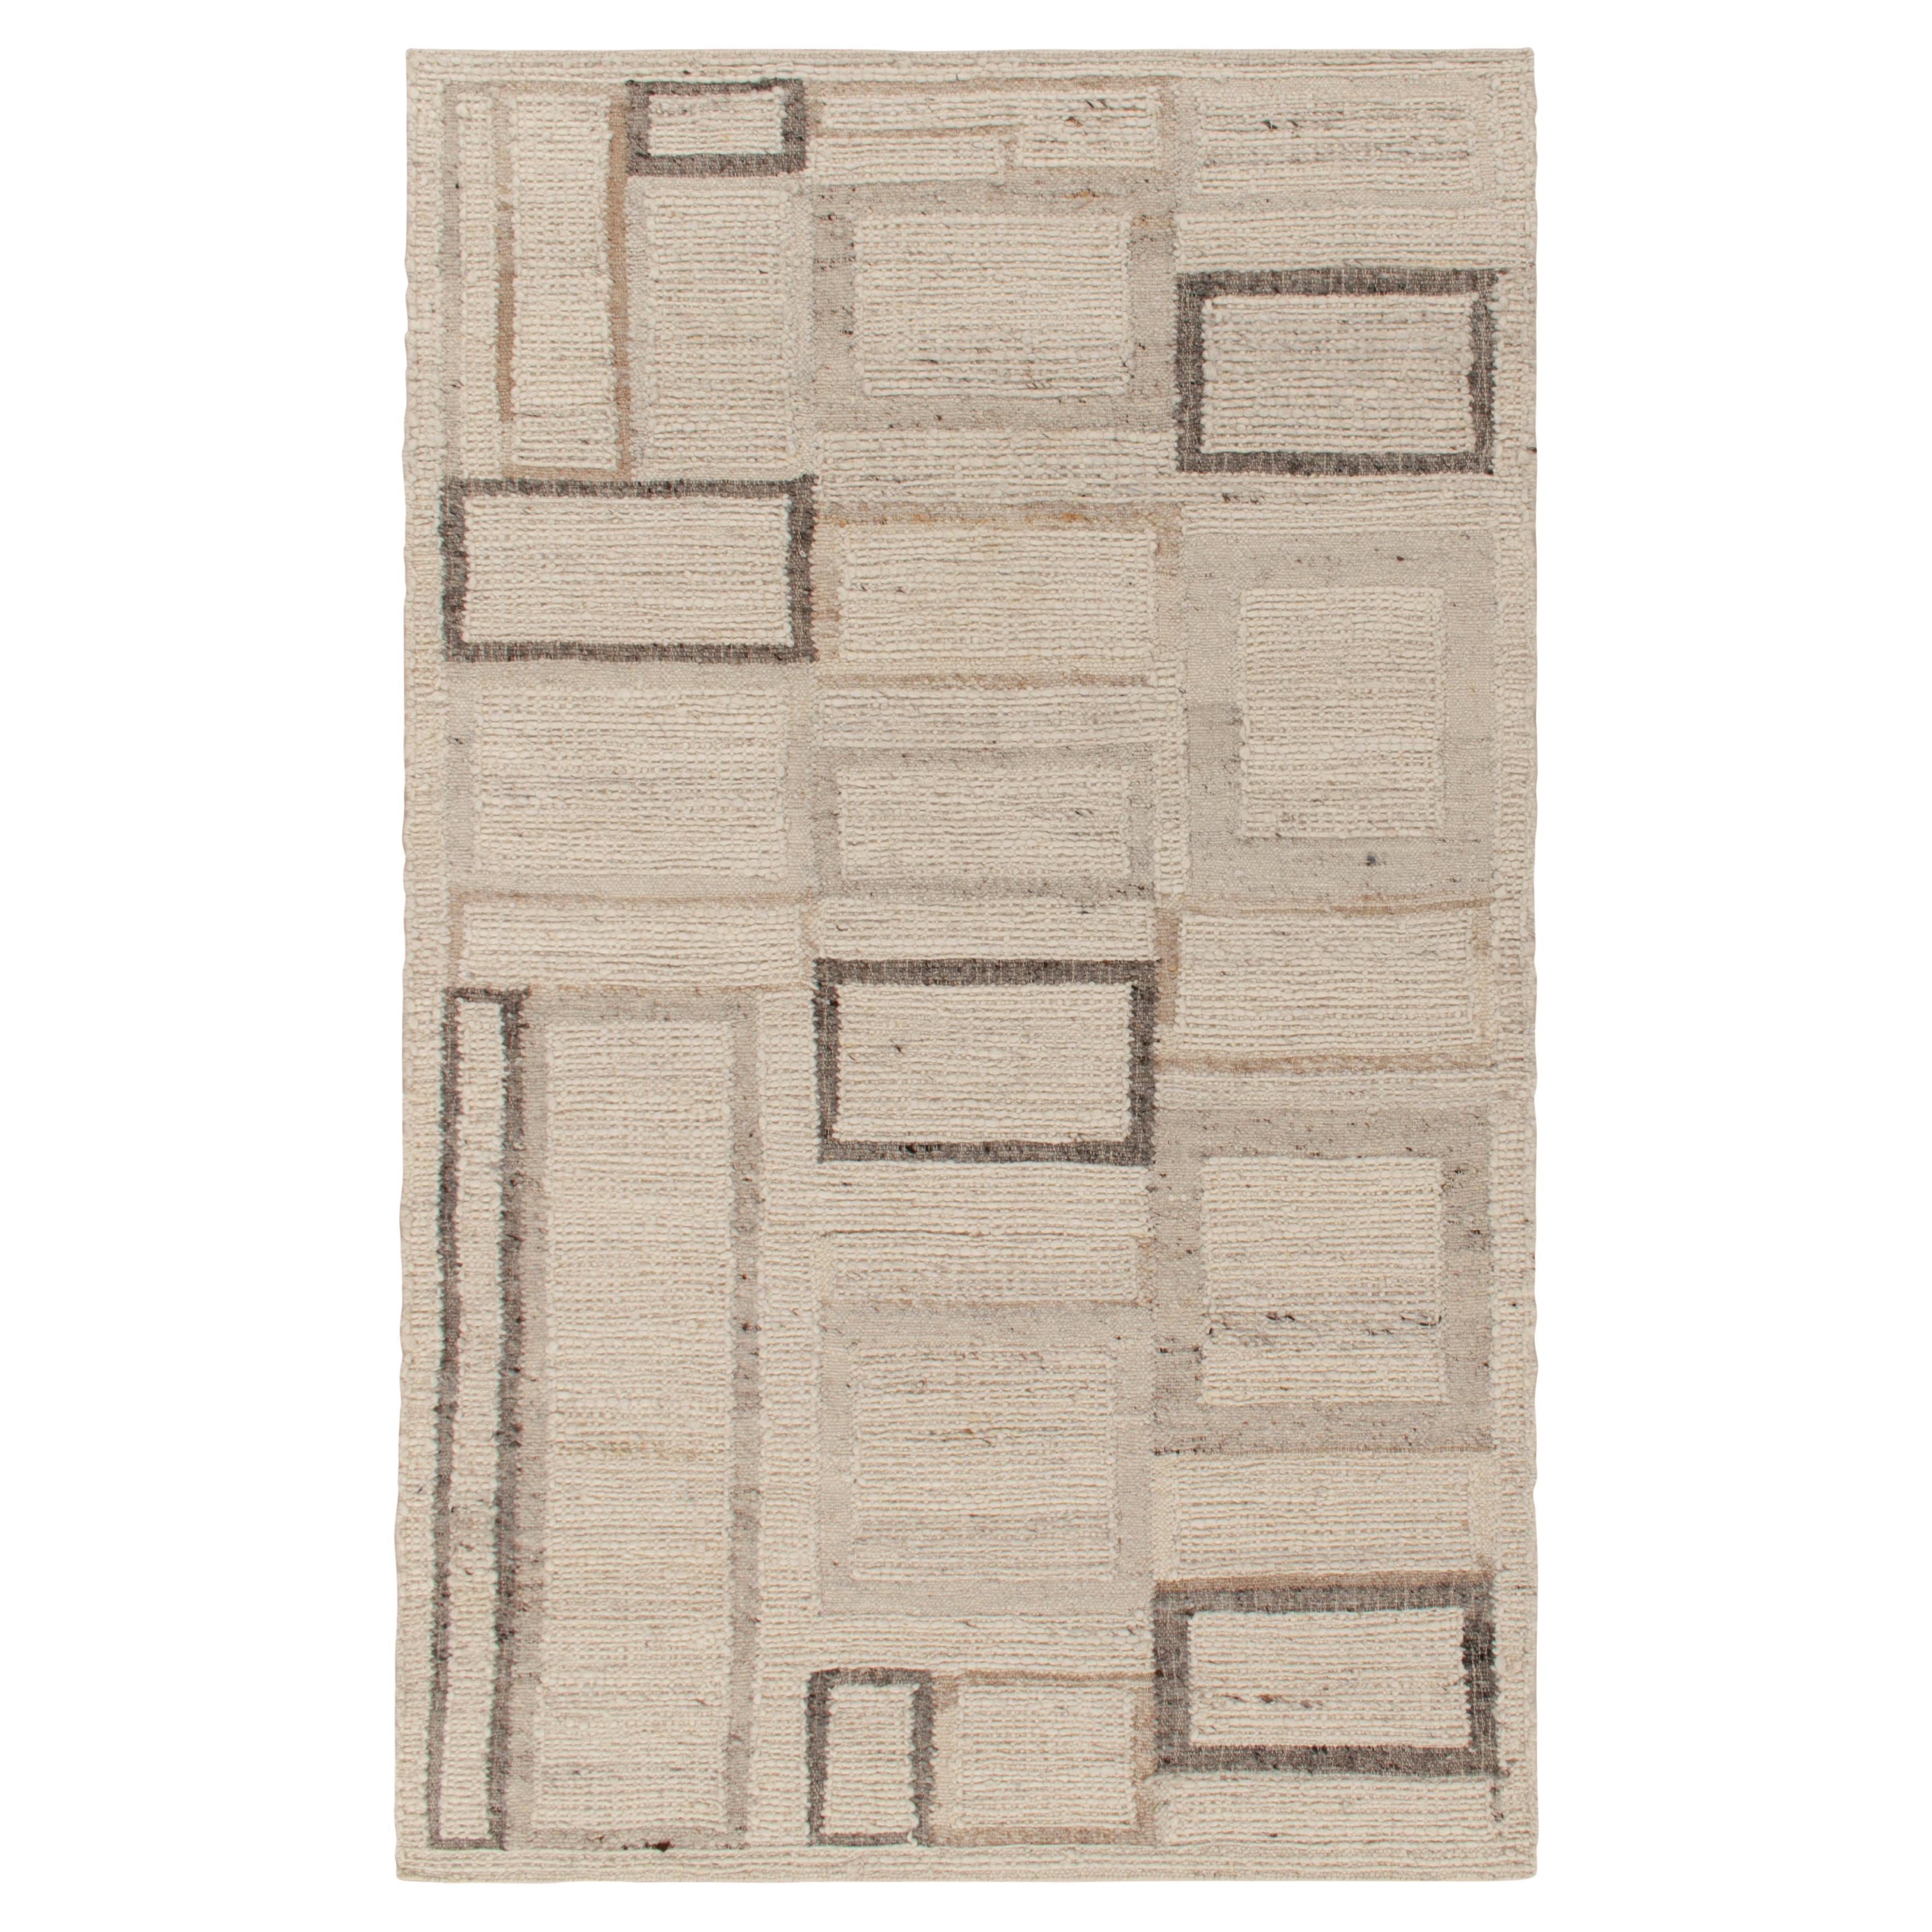 Zeitgenössischer Kelim-Teppich und Kelim-Teppich mit beige-braunem Art-Déco-Muster